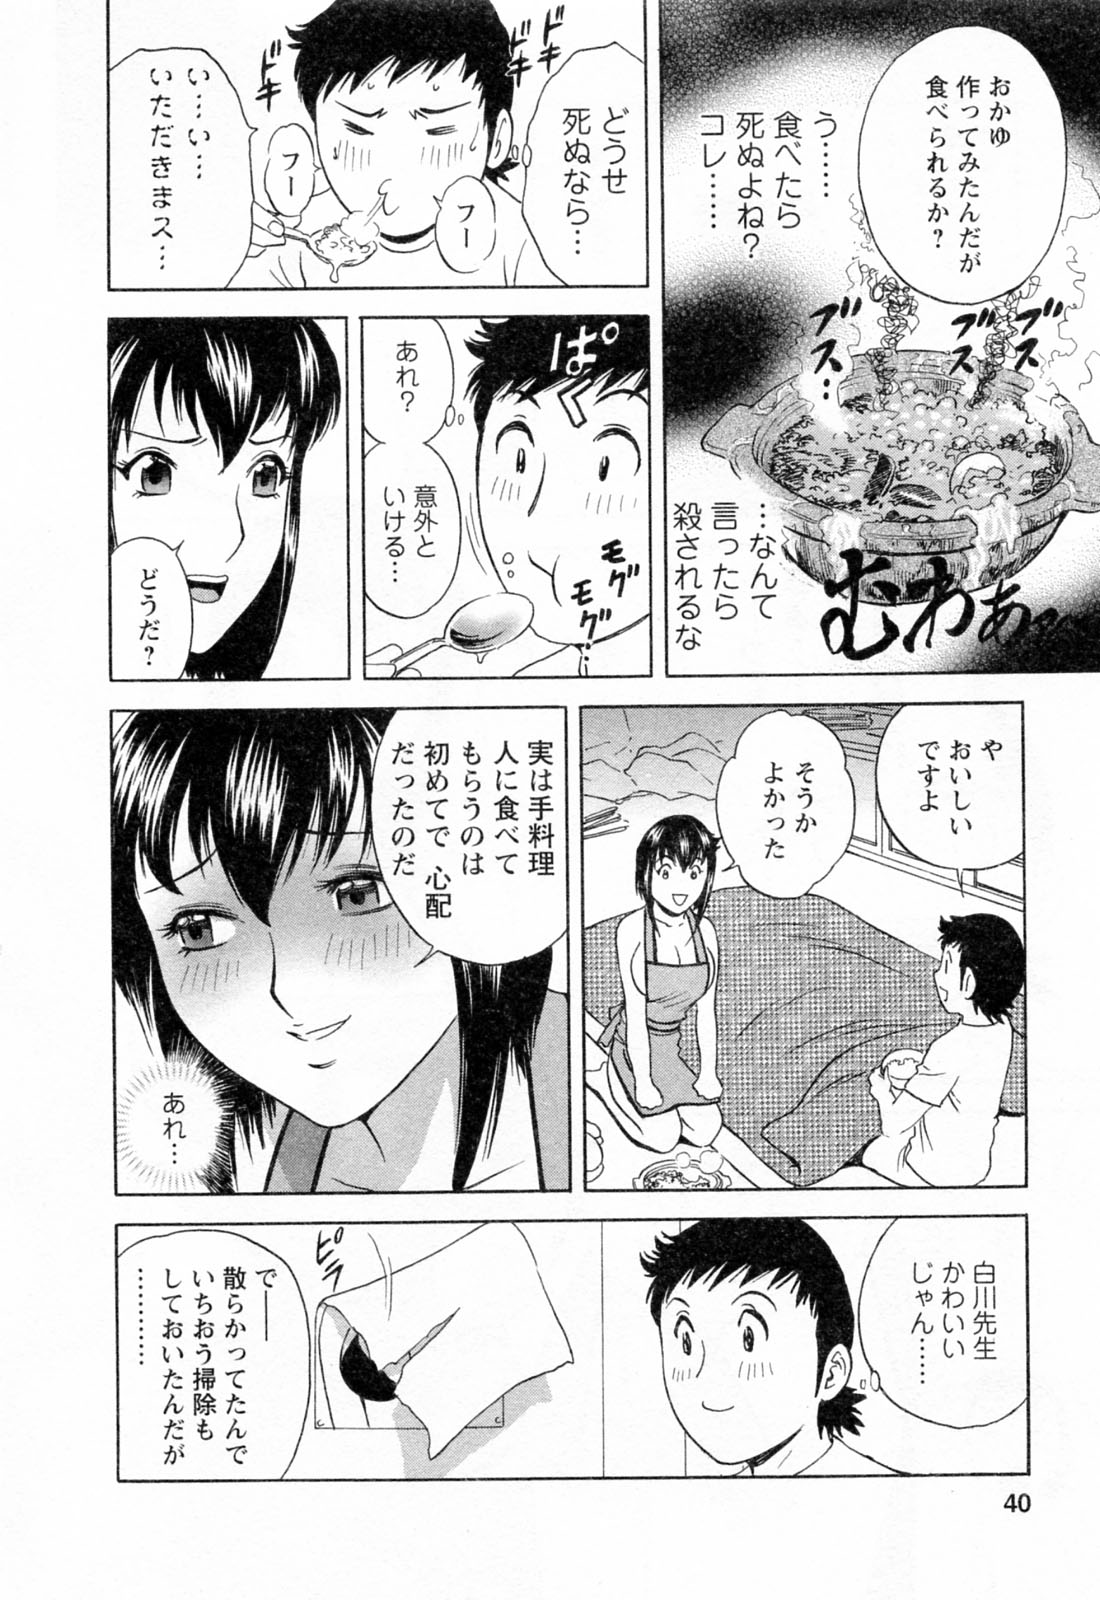 [Hidemaru] Mo-Retsu! Boin Sensei (Boing Boing Teacher) Vol.4 page 42 full